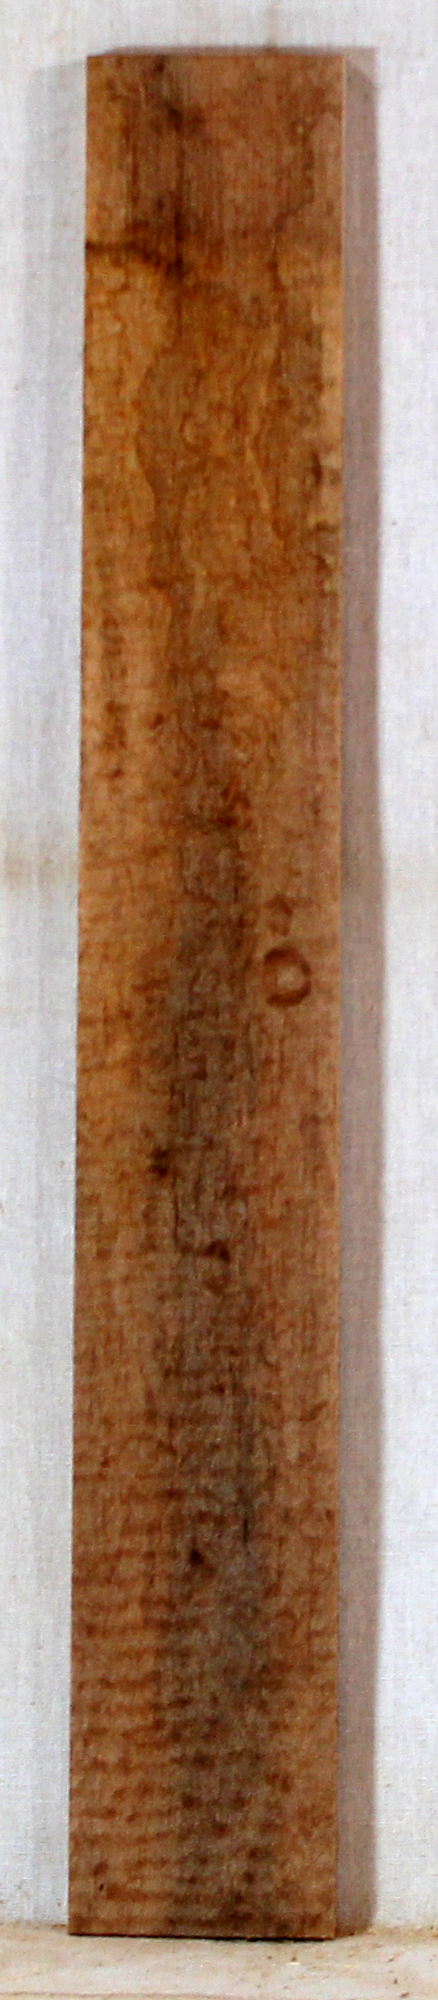 Maple Ukulele Fingerboard Stabilized (EG52)